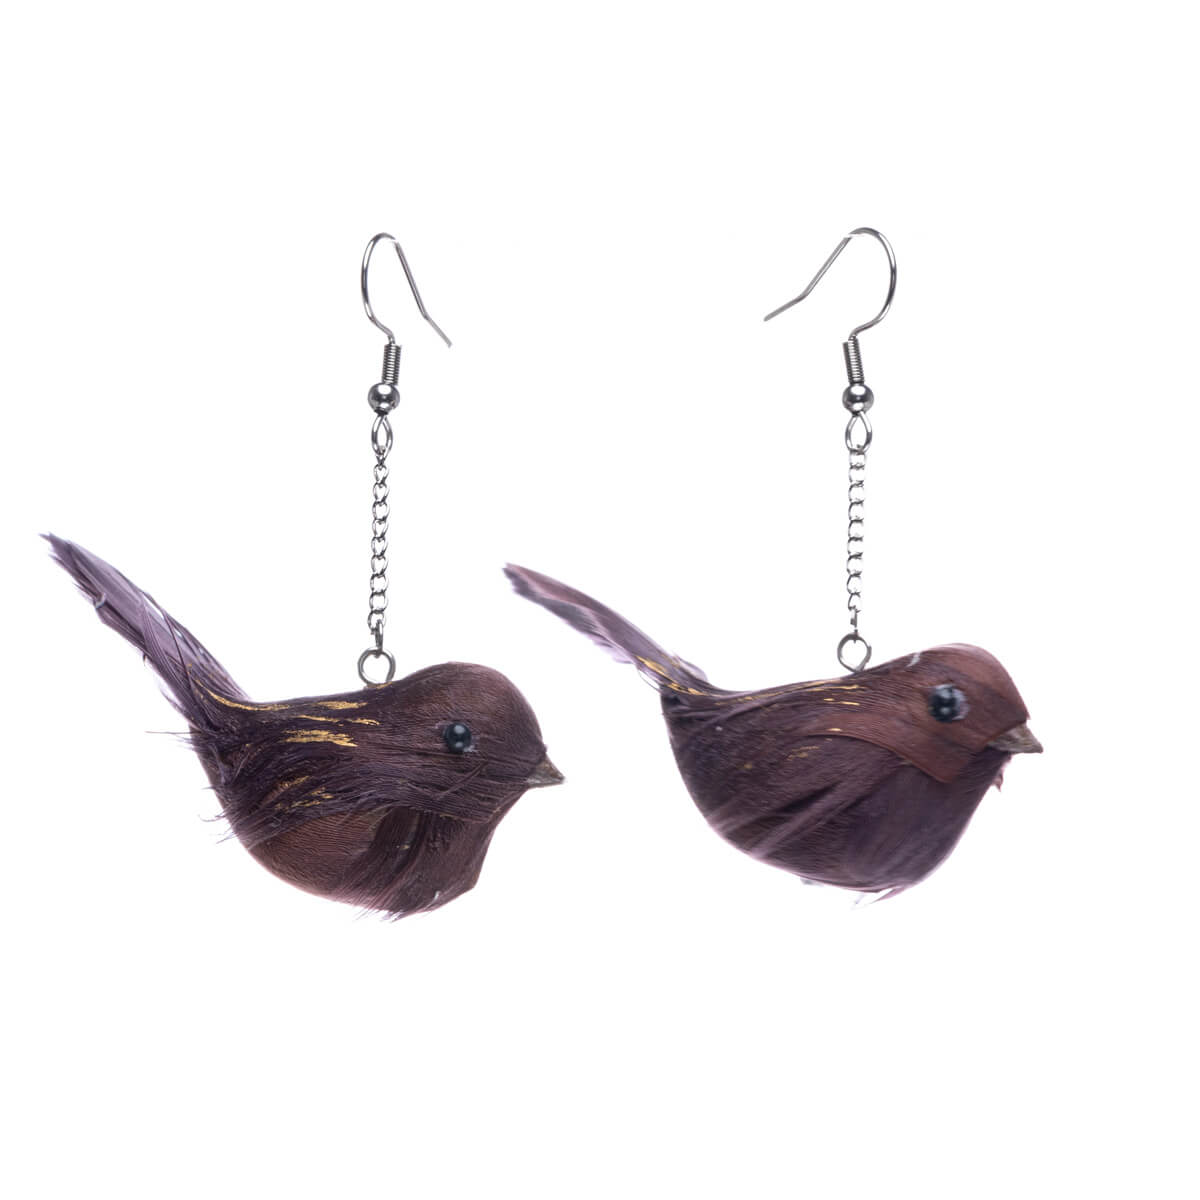 Bird earrings - Made in Finland (Steel 316L)